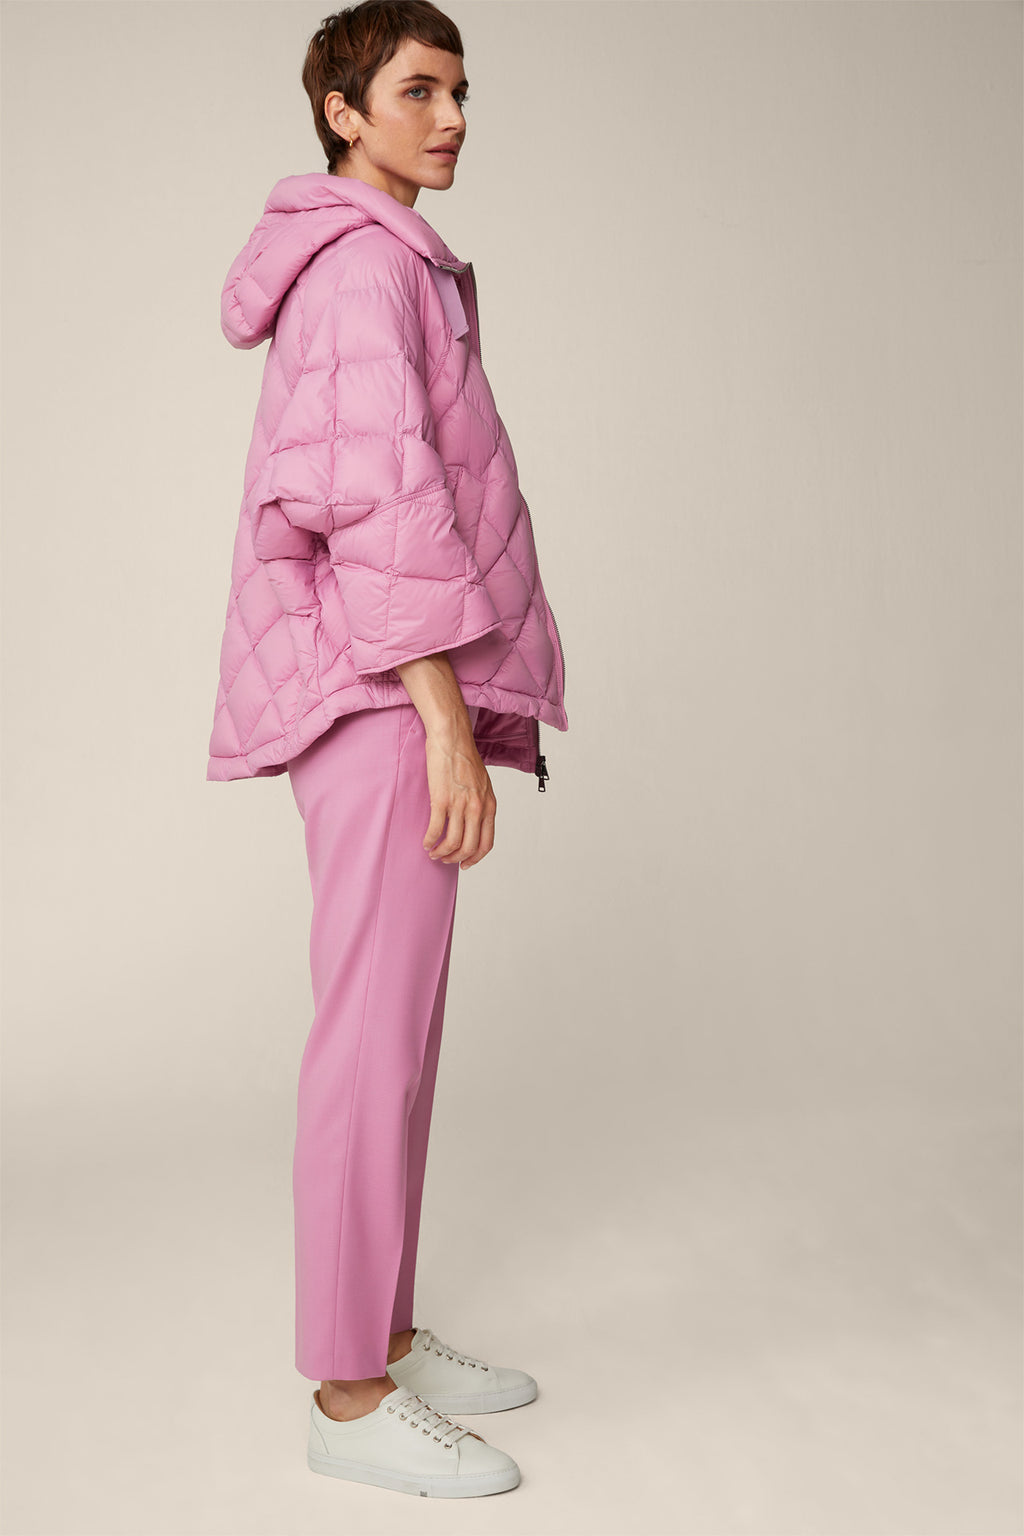 Stepp-Jacke mit Kapuzenkragen in hellem Pink